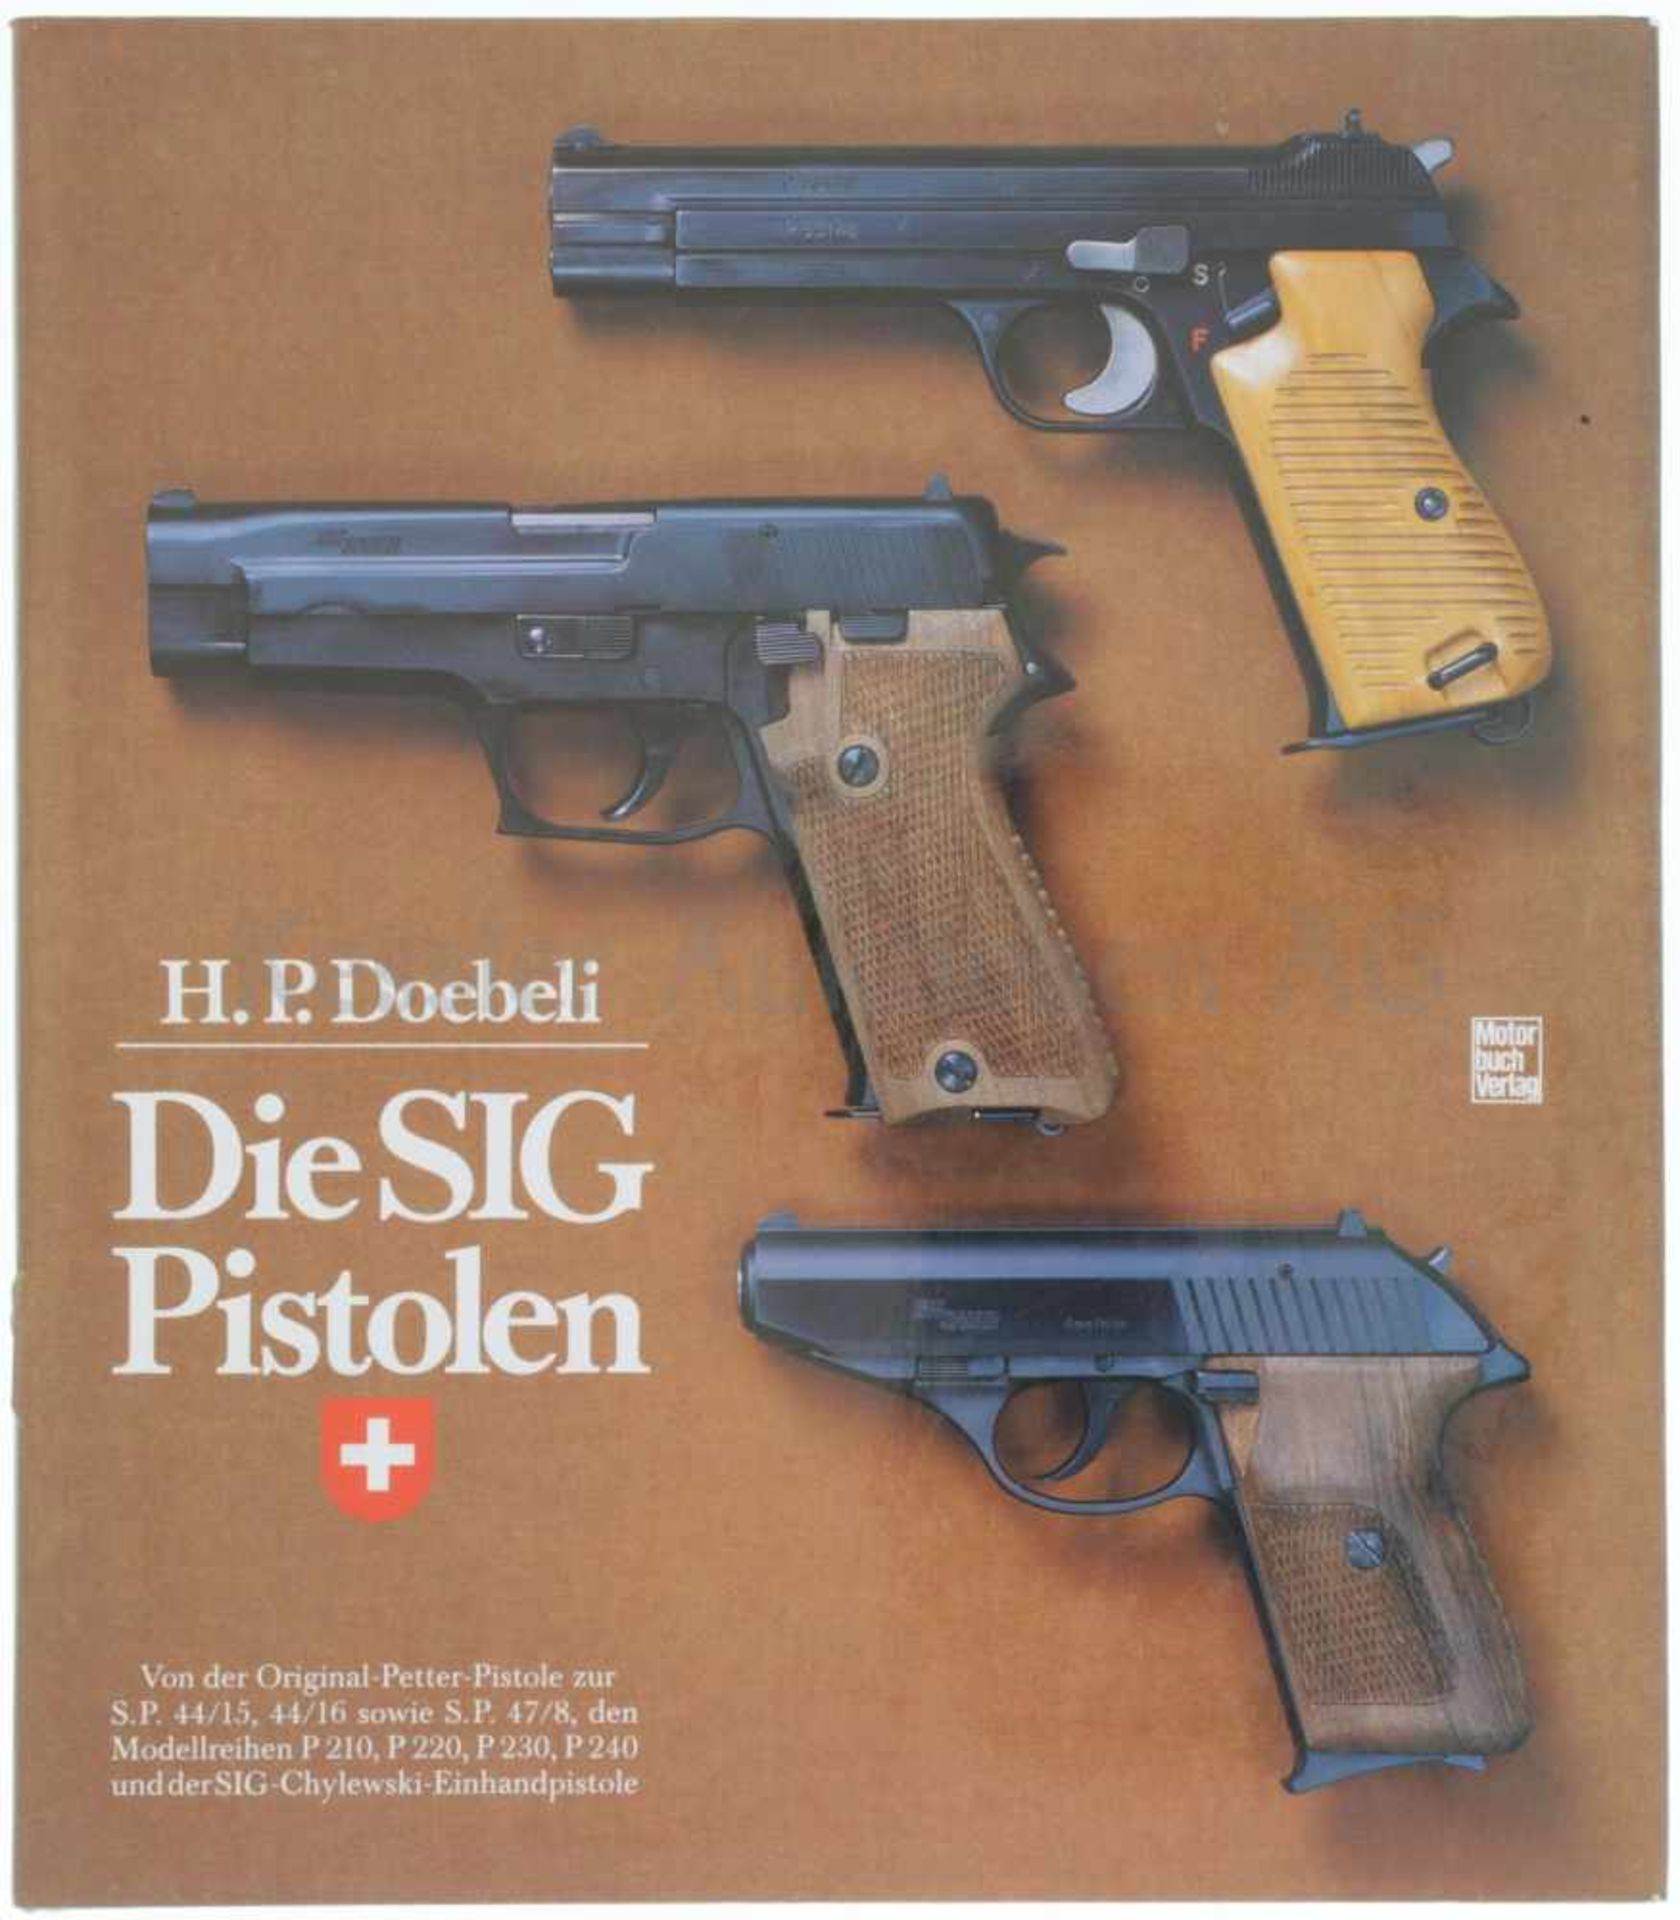 Die SIG-Pistolen Auf 190 Seiten beschreibt der Autor, Dr. H. P. Doebeli die Entwicklung der SIG-